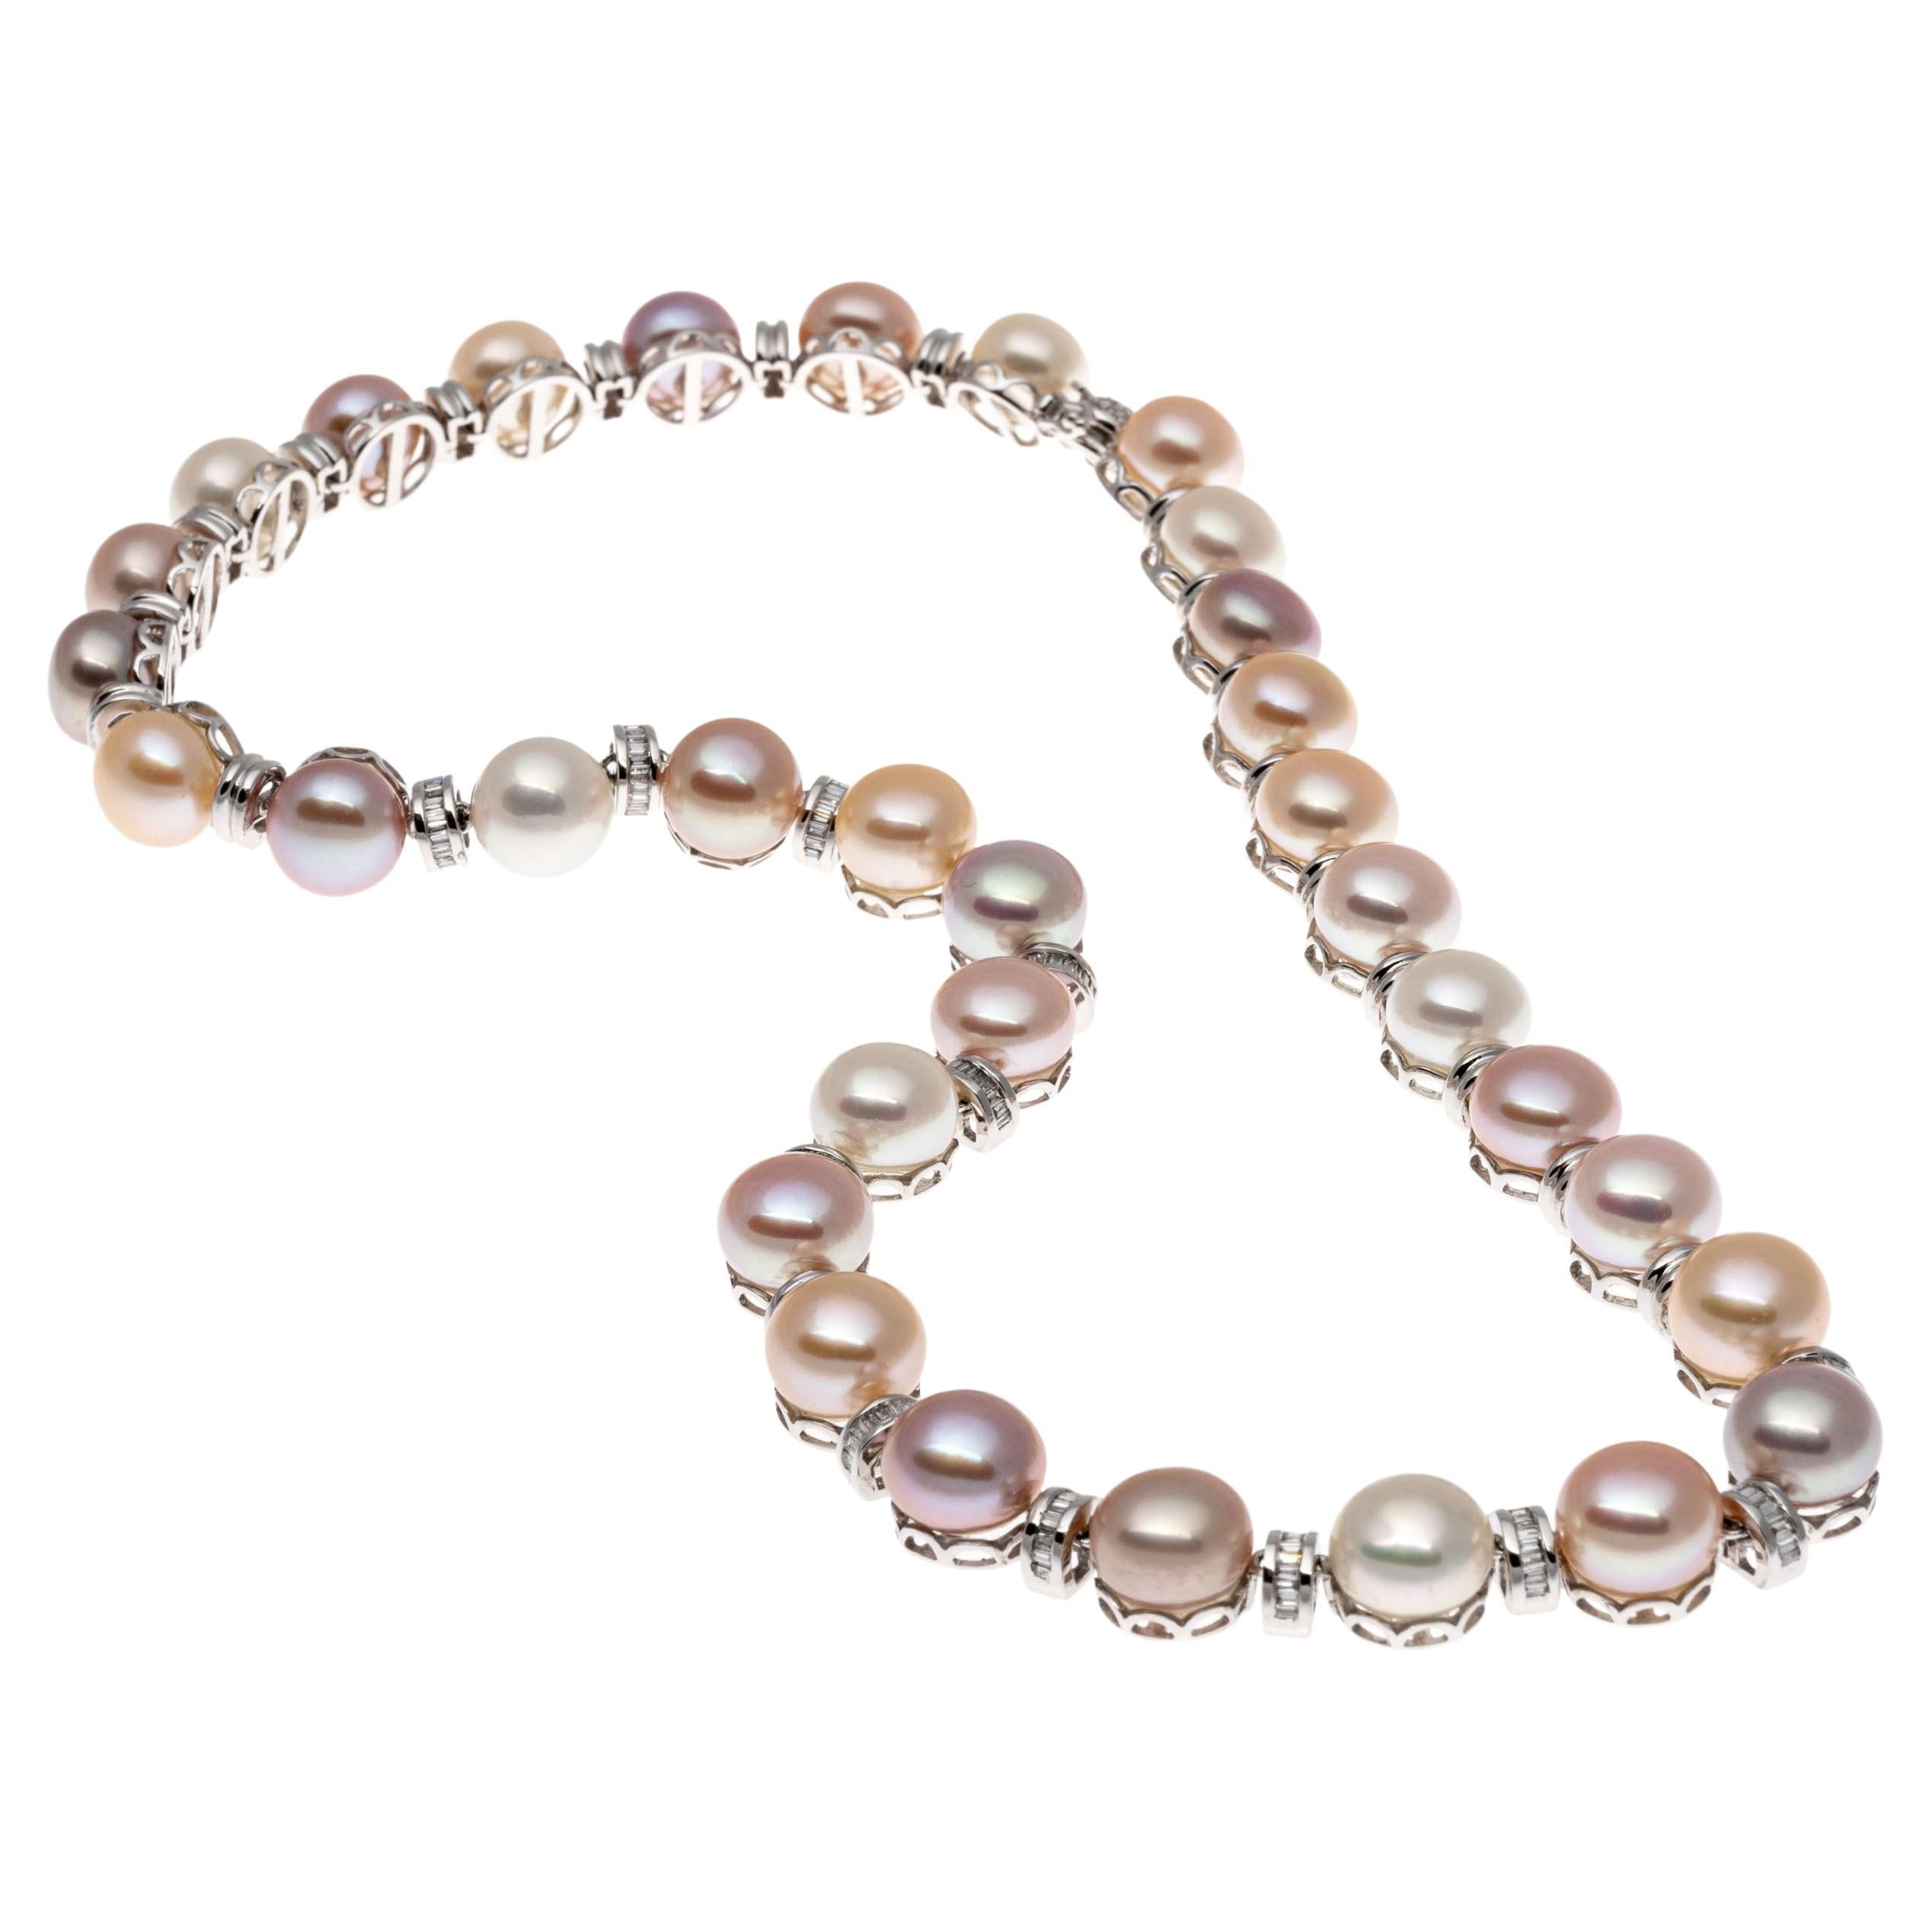 Halskette aus 14k Weißgold. Dieses wunderbare Collier enthält runde, 9 mm bis 9,25 mm große Zuchtknopfperlen in einer Vielzahl von Farbtönen - rosa-weiß, violett, champagnerfarben, goldfarben, rosa, taupefarben -, die sich mit halbrunden Gliedern